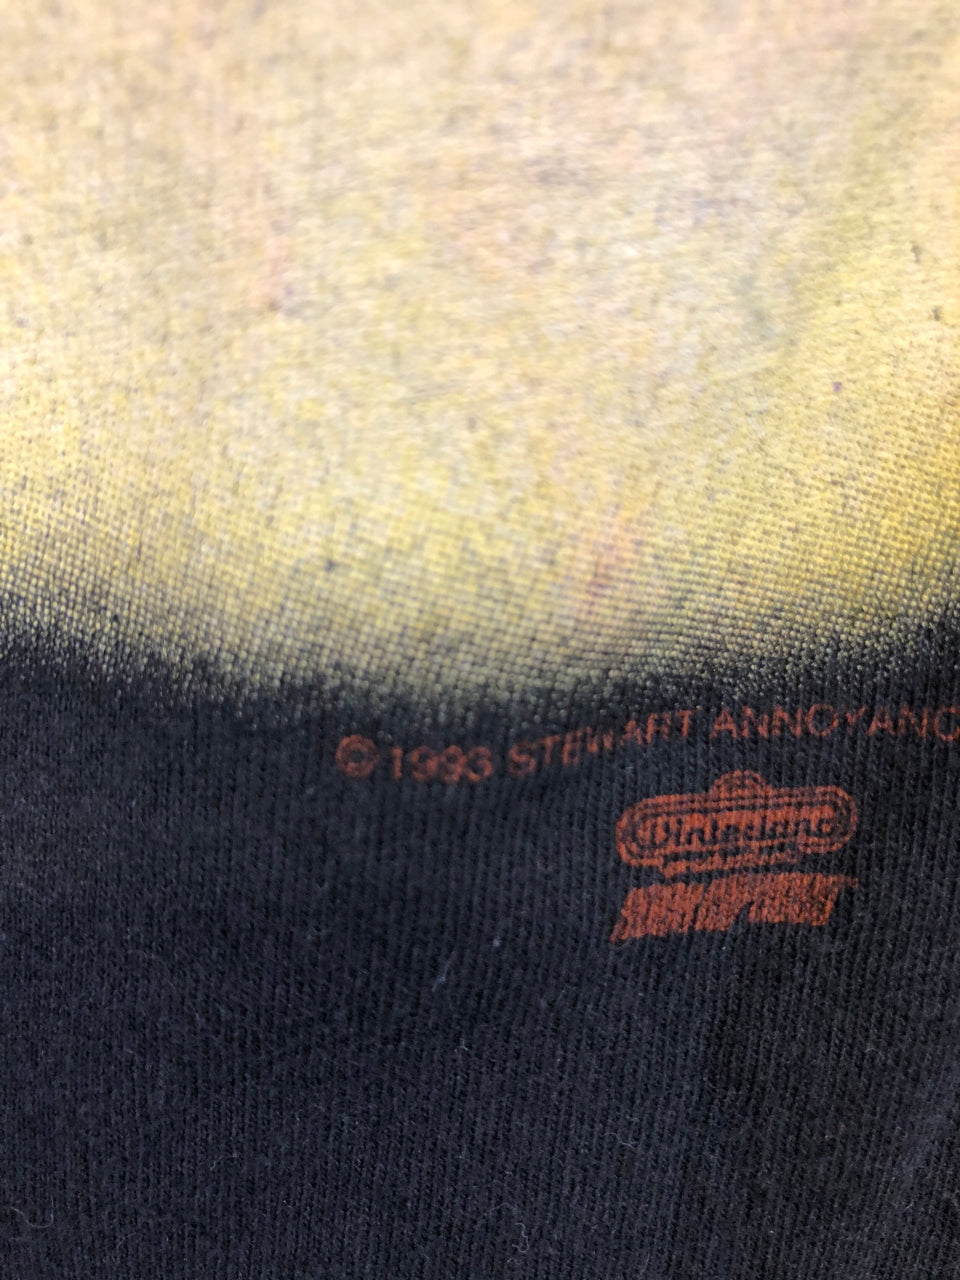 Rod Stewart 1993 T-Shirt